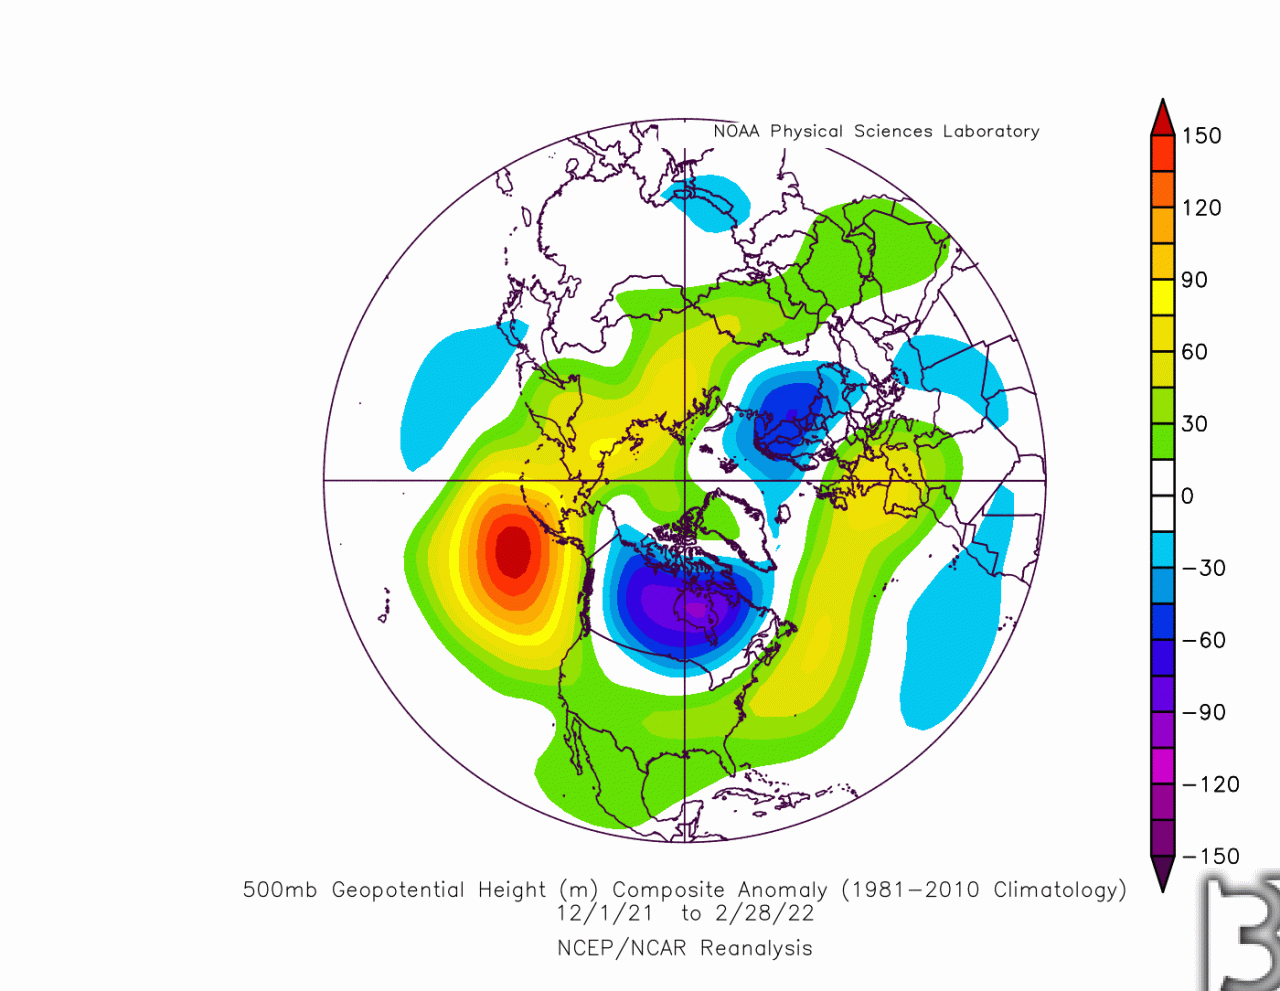 pattern invernale che non è stato propenso a trasferimenti di calore dal basso, il vortice stratosferico dunque si è raffreddato